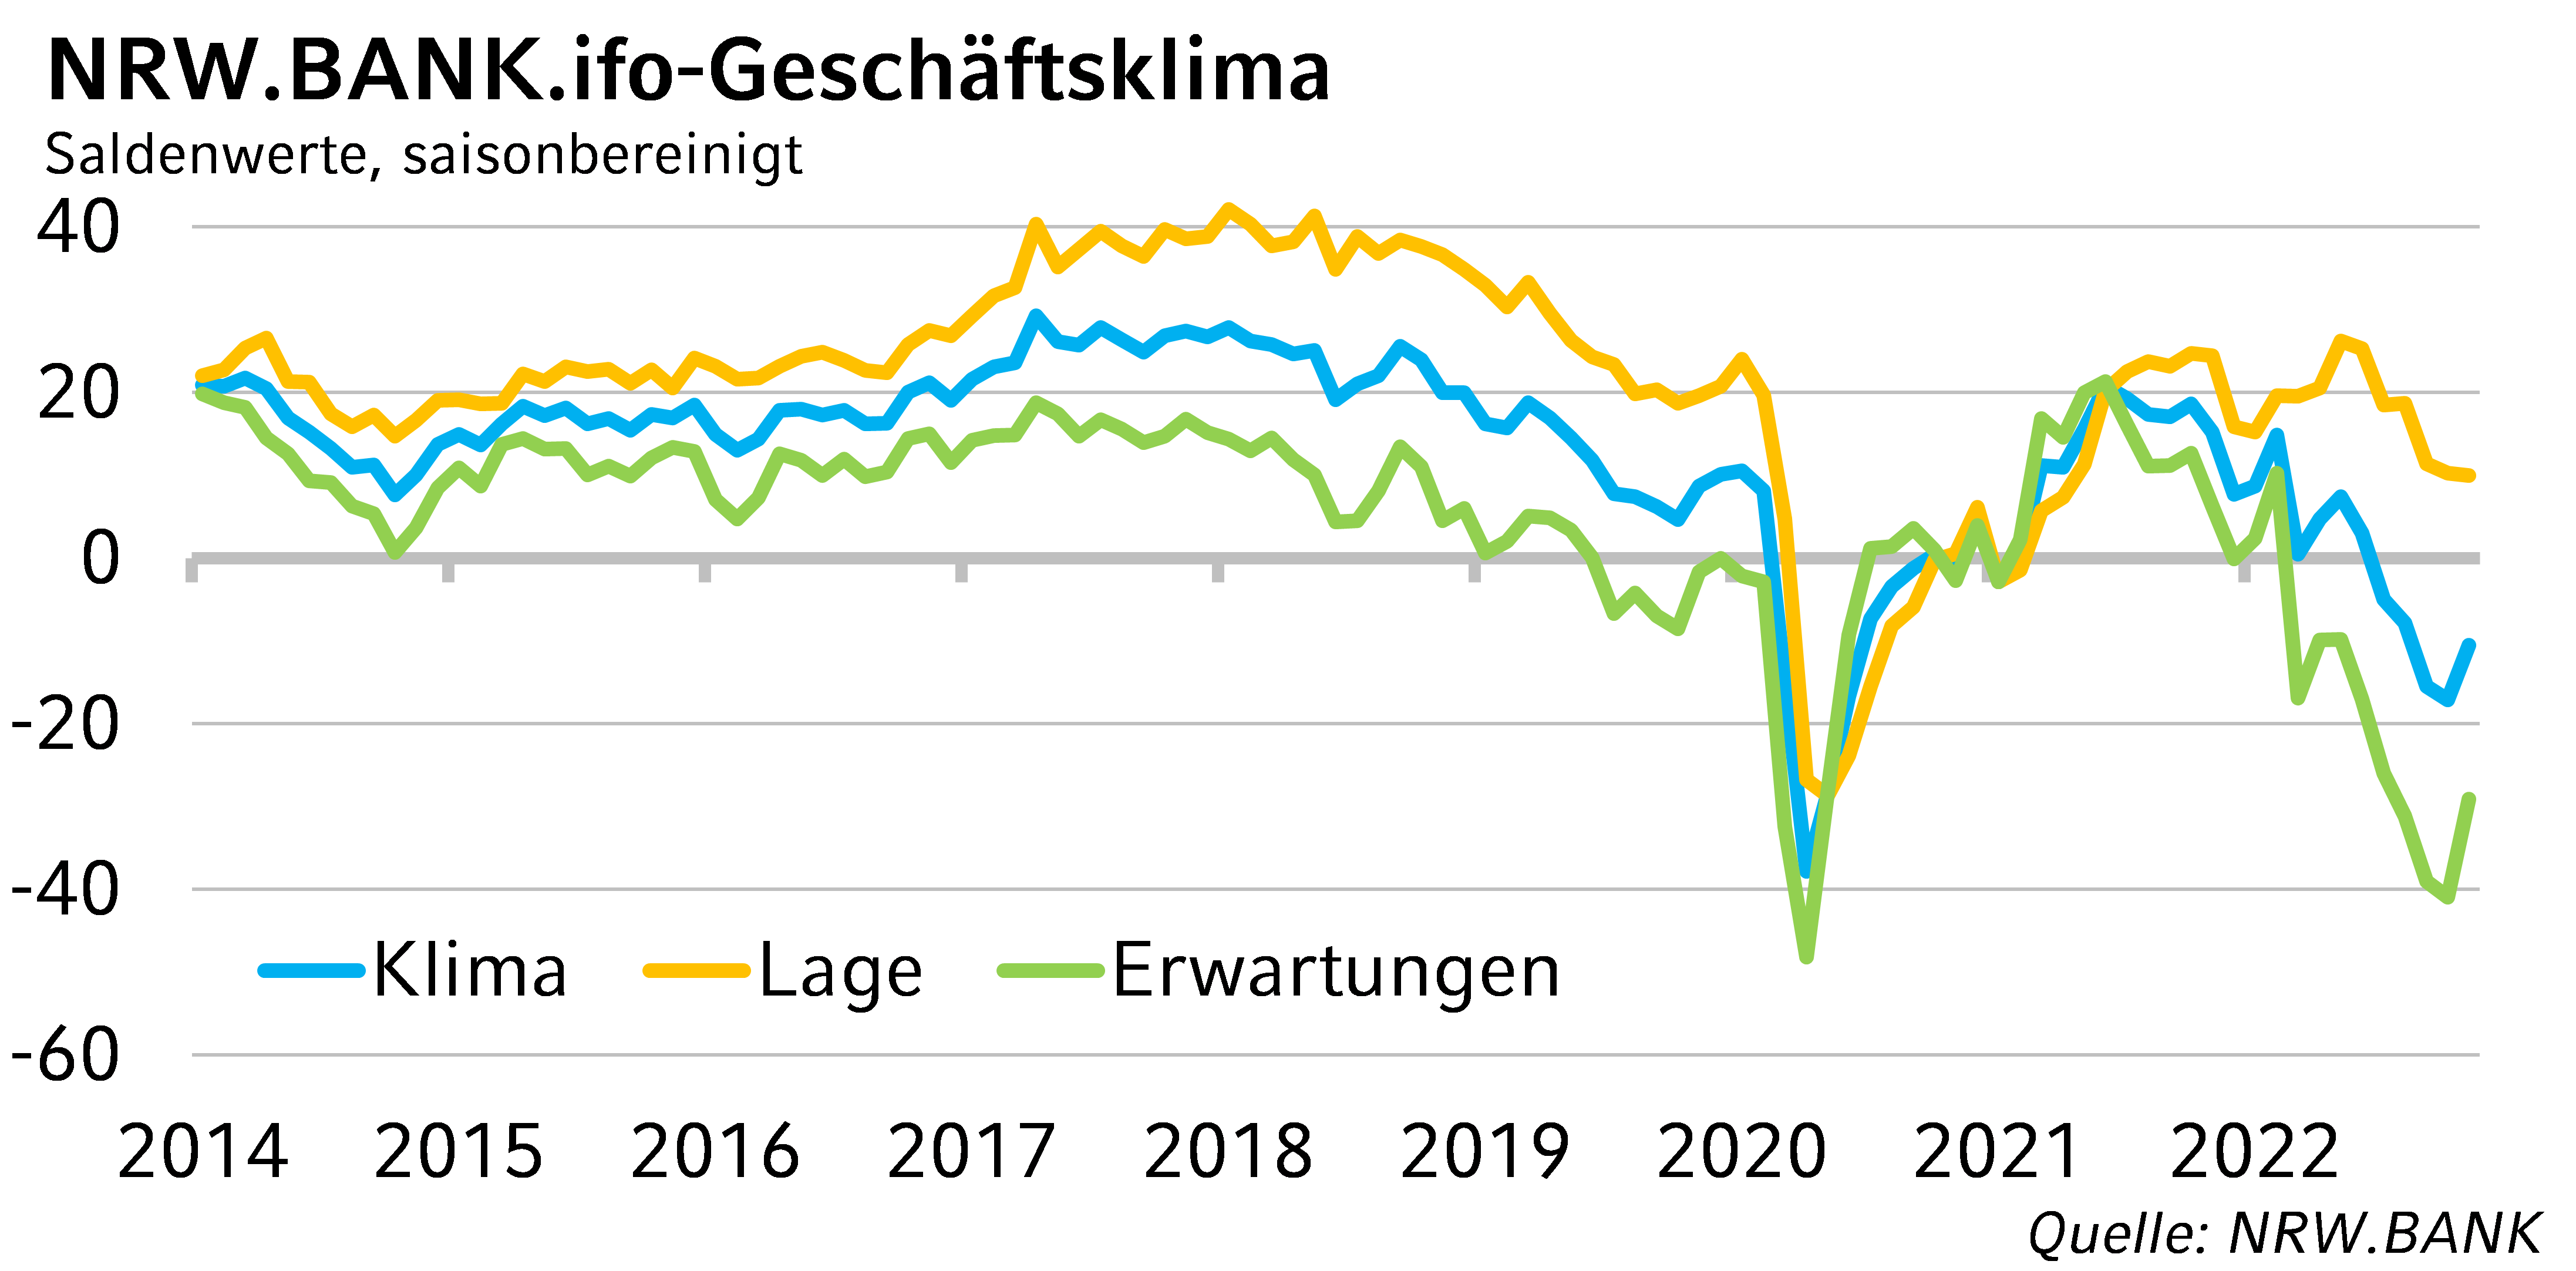 NRW.BANK.ifo-Geschäftsklima November 2022: Nordrhein-westfälische Wirtschaft schöpft vorsichtig Hoffnung